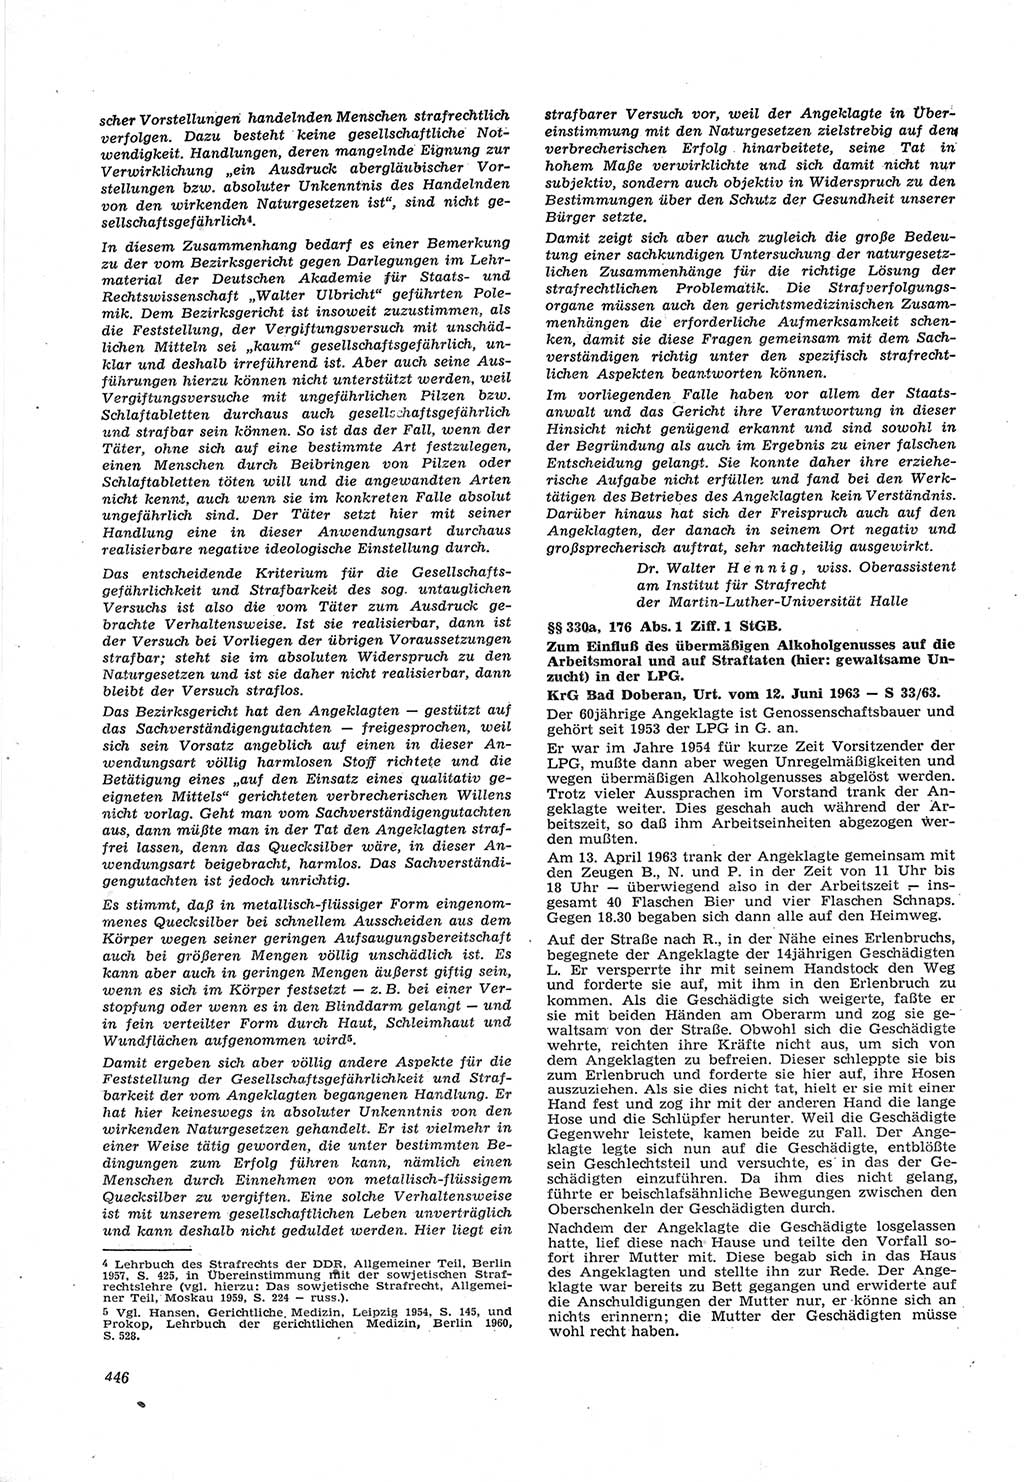 Neue Justiz (NJ), Zeitschrift für Recht und Rechtswissenschaft [Deutsche Demokratische Republik (DDR)], 17. Jahrgang 1963, Seite 446 (NJ DDR 1963, S. 446)